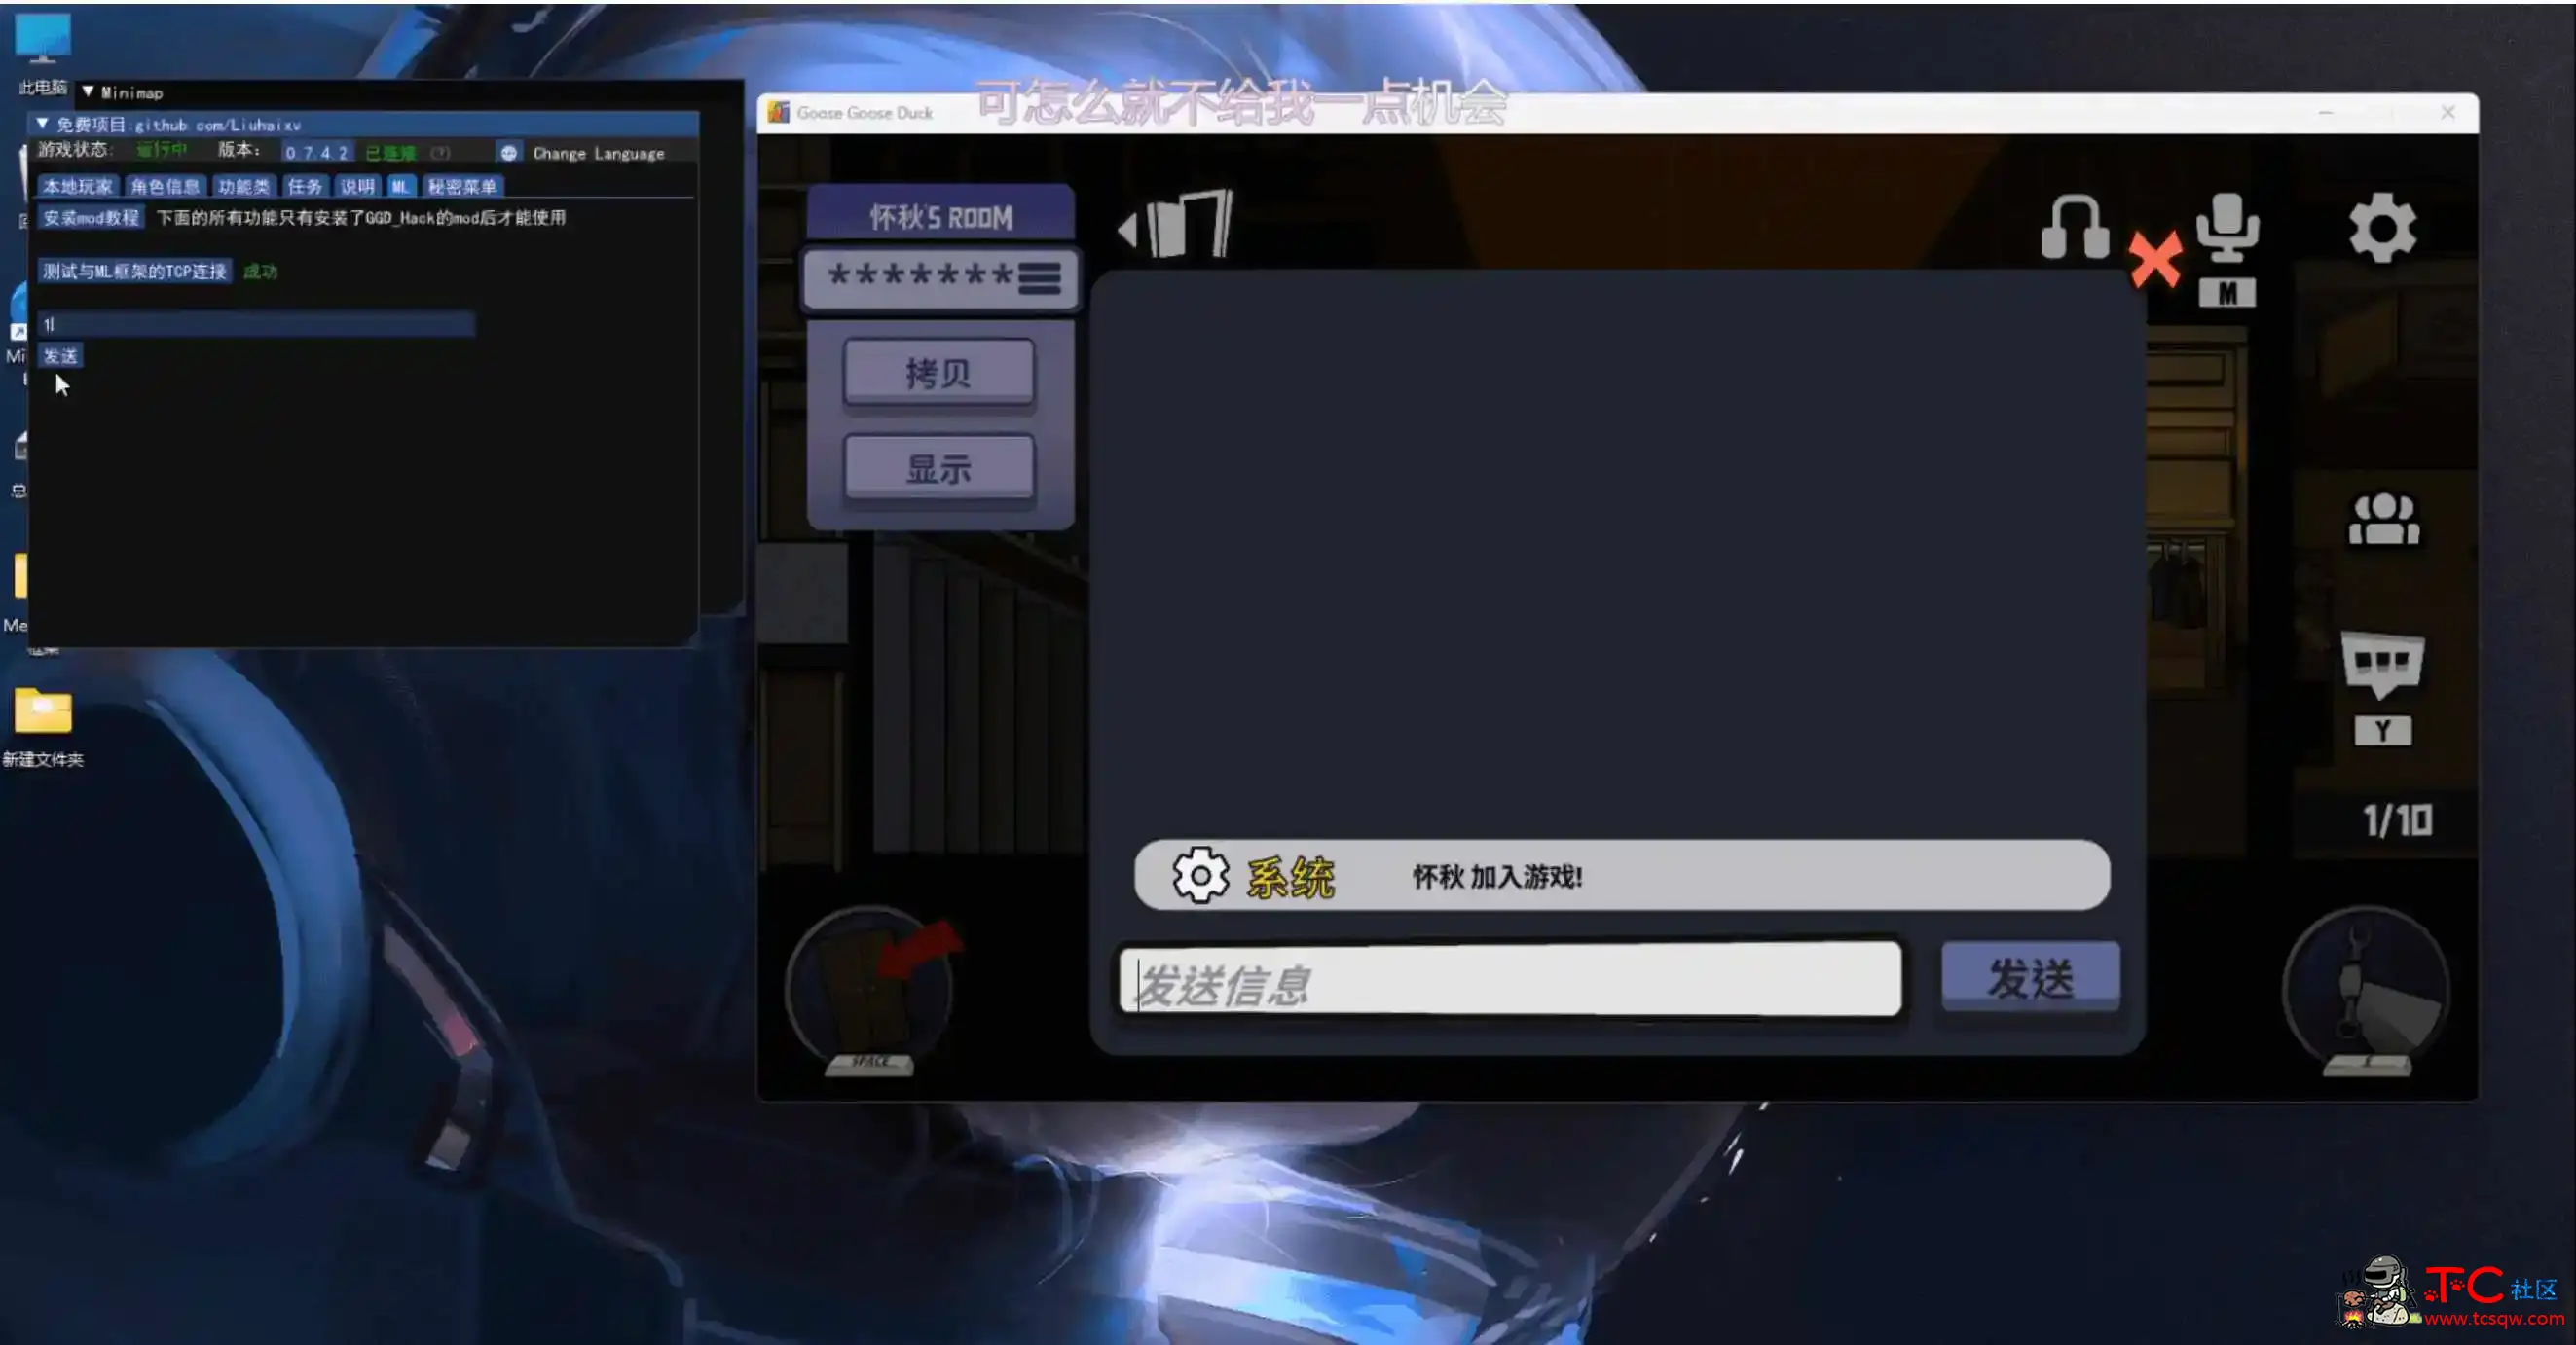 鹅鸭杀Minimp显玩家传送无冷却穿墙多功能辅助v1.5.1 屠城辅助网www.tcfz1.com9231